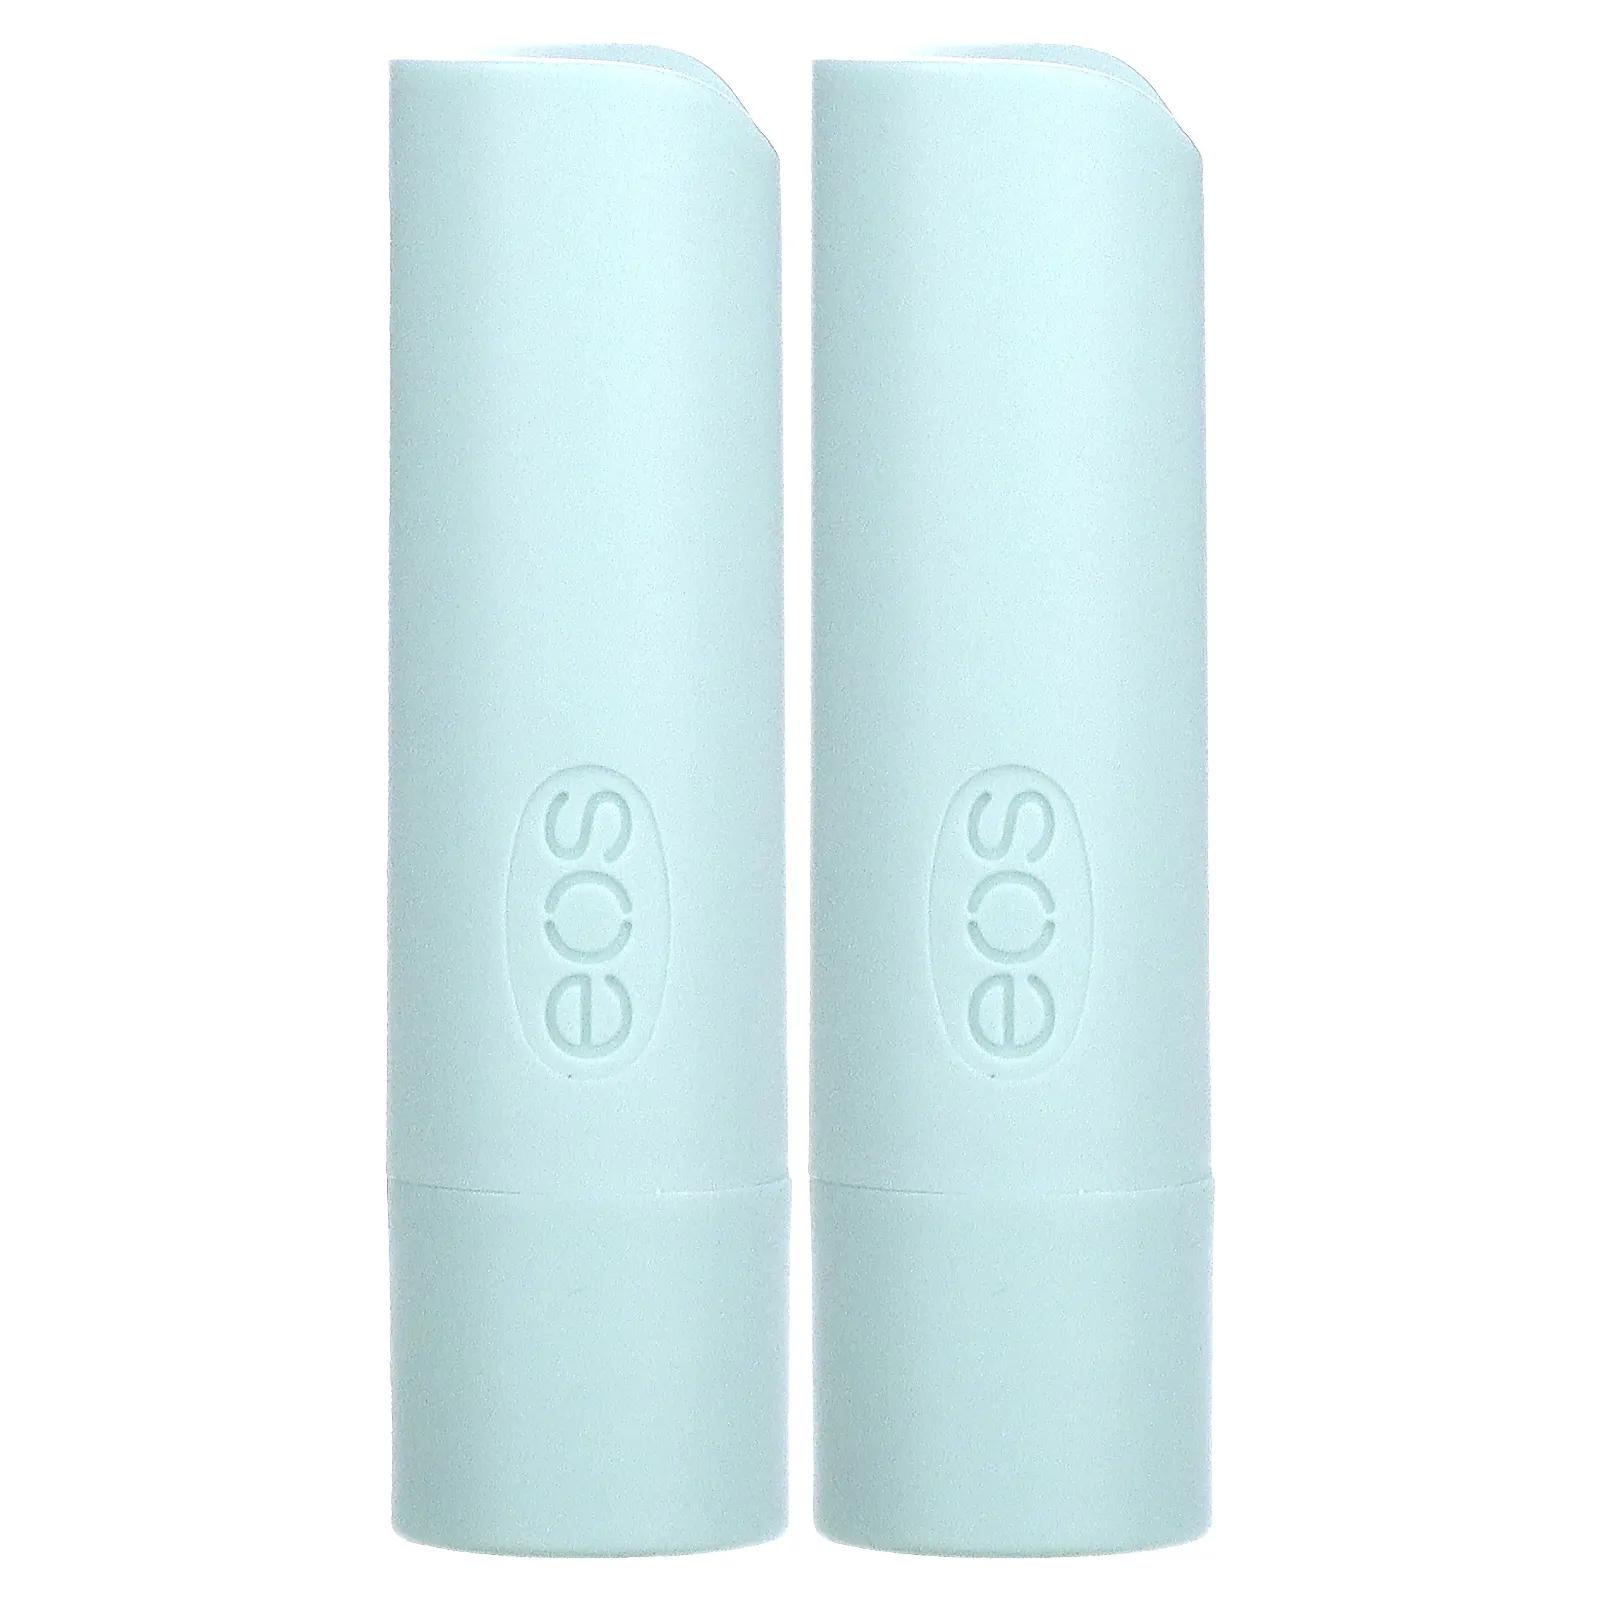 EOS Бальзам для губ сладкая мята 2 шт. .14 унции(4 г) каждый eos бальзам для губ клубничный сорбет 2 шт 14 унции 4 г каждый